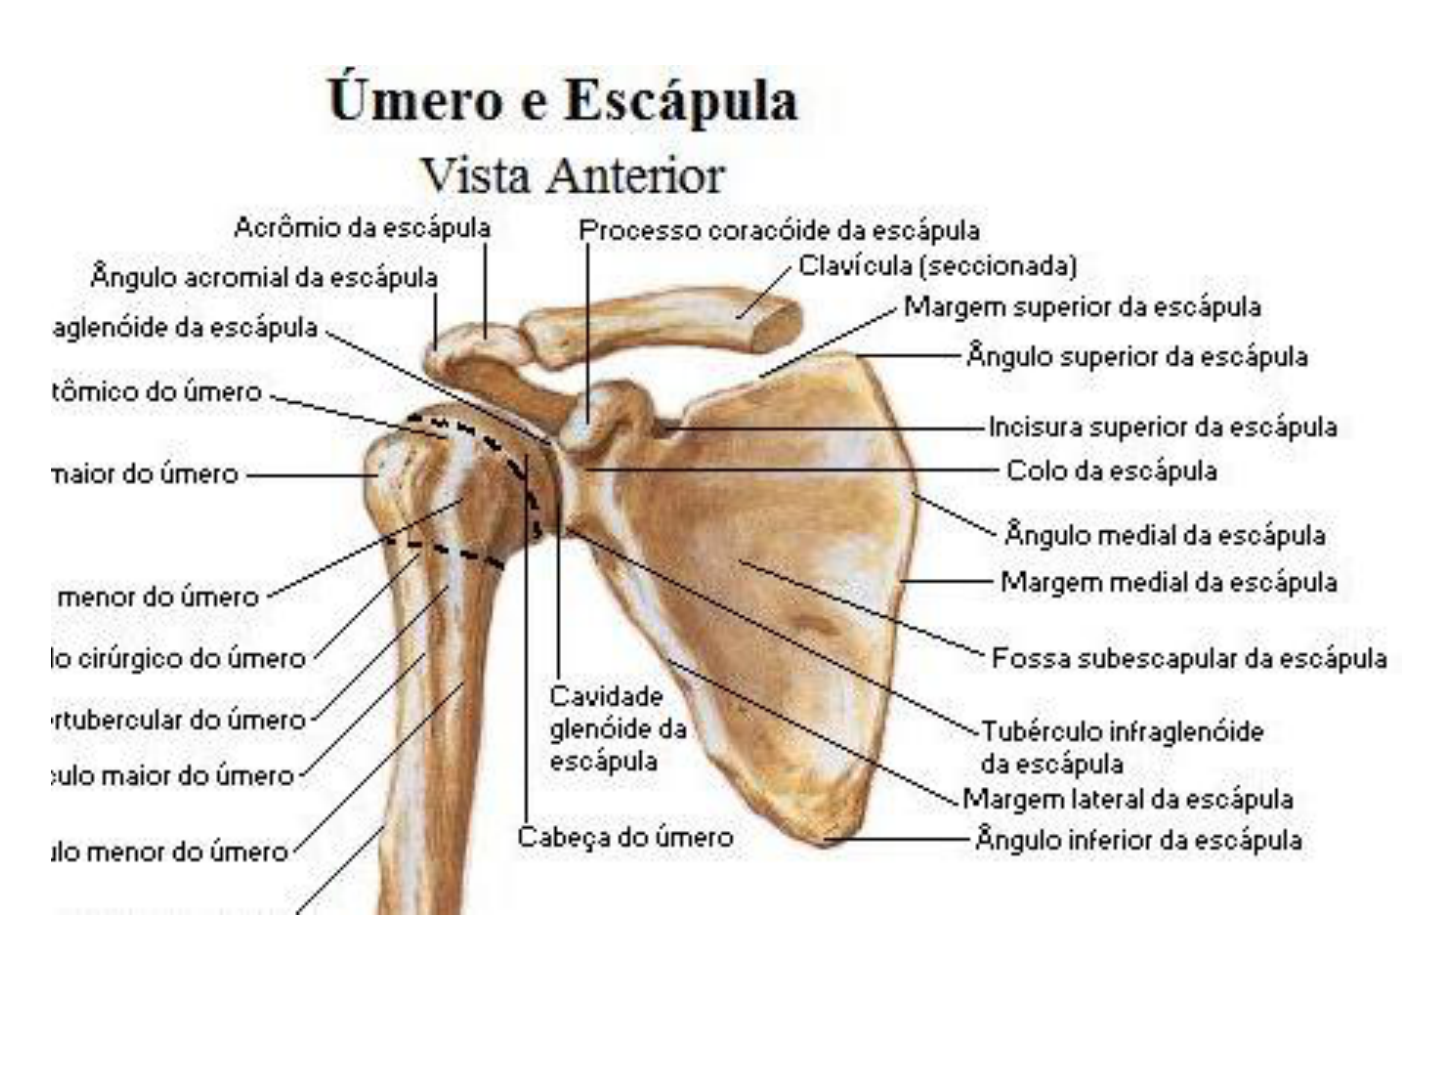 anatomia da escapula - Anatomia I